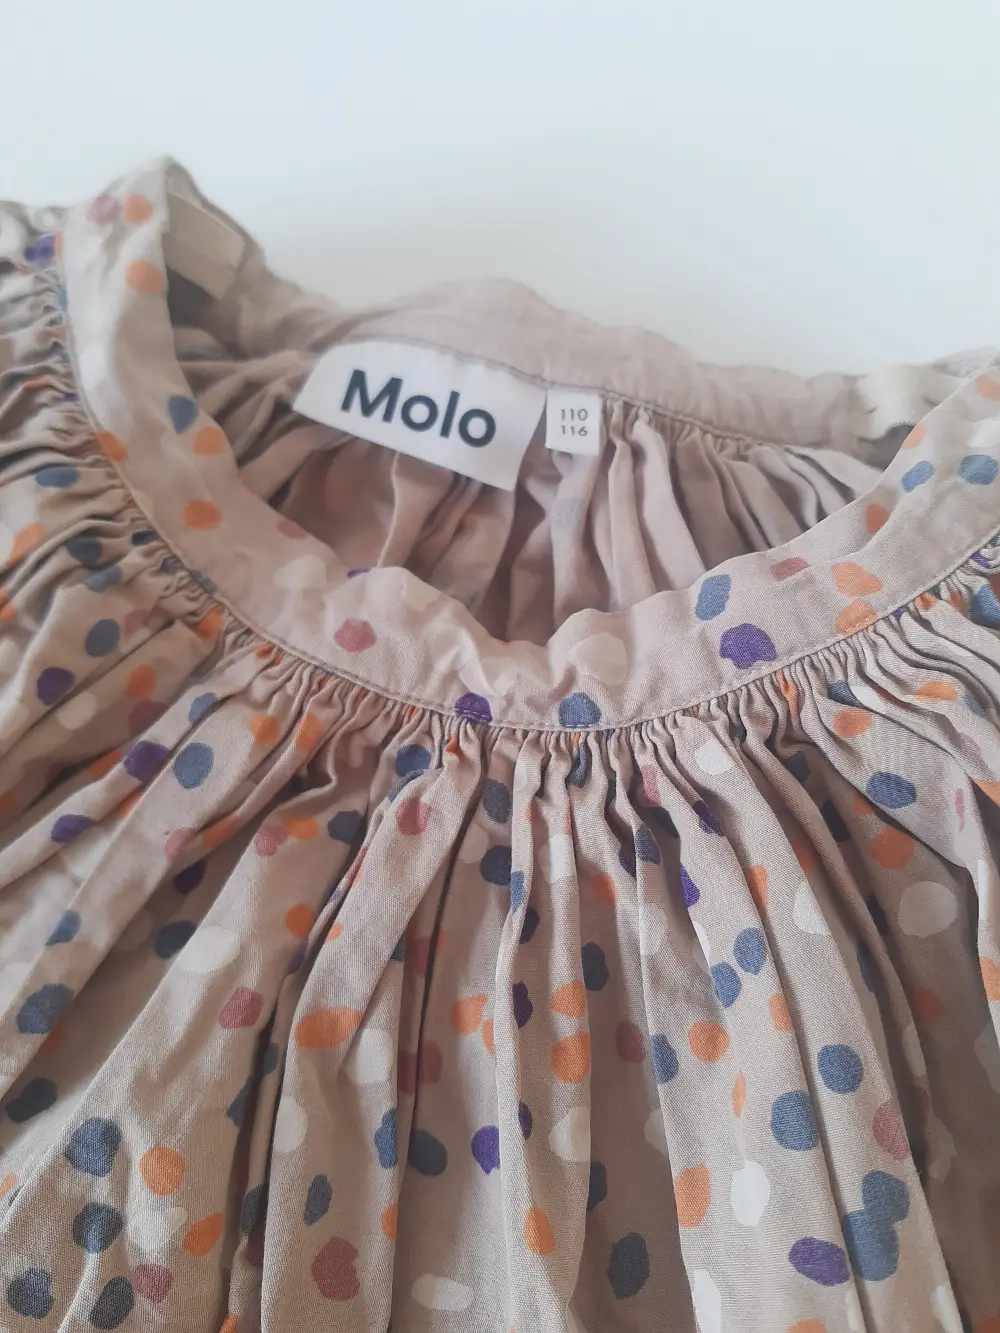 Køb Molo Nederdel m.m. i 110 af Louise Størup på Reshopper · Shop secondhand til mor og bolig